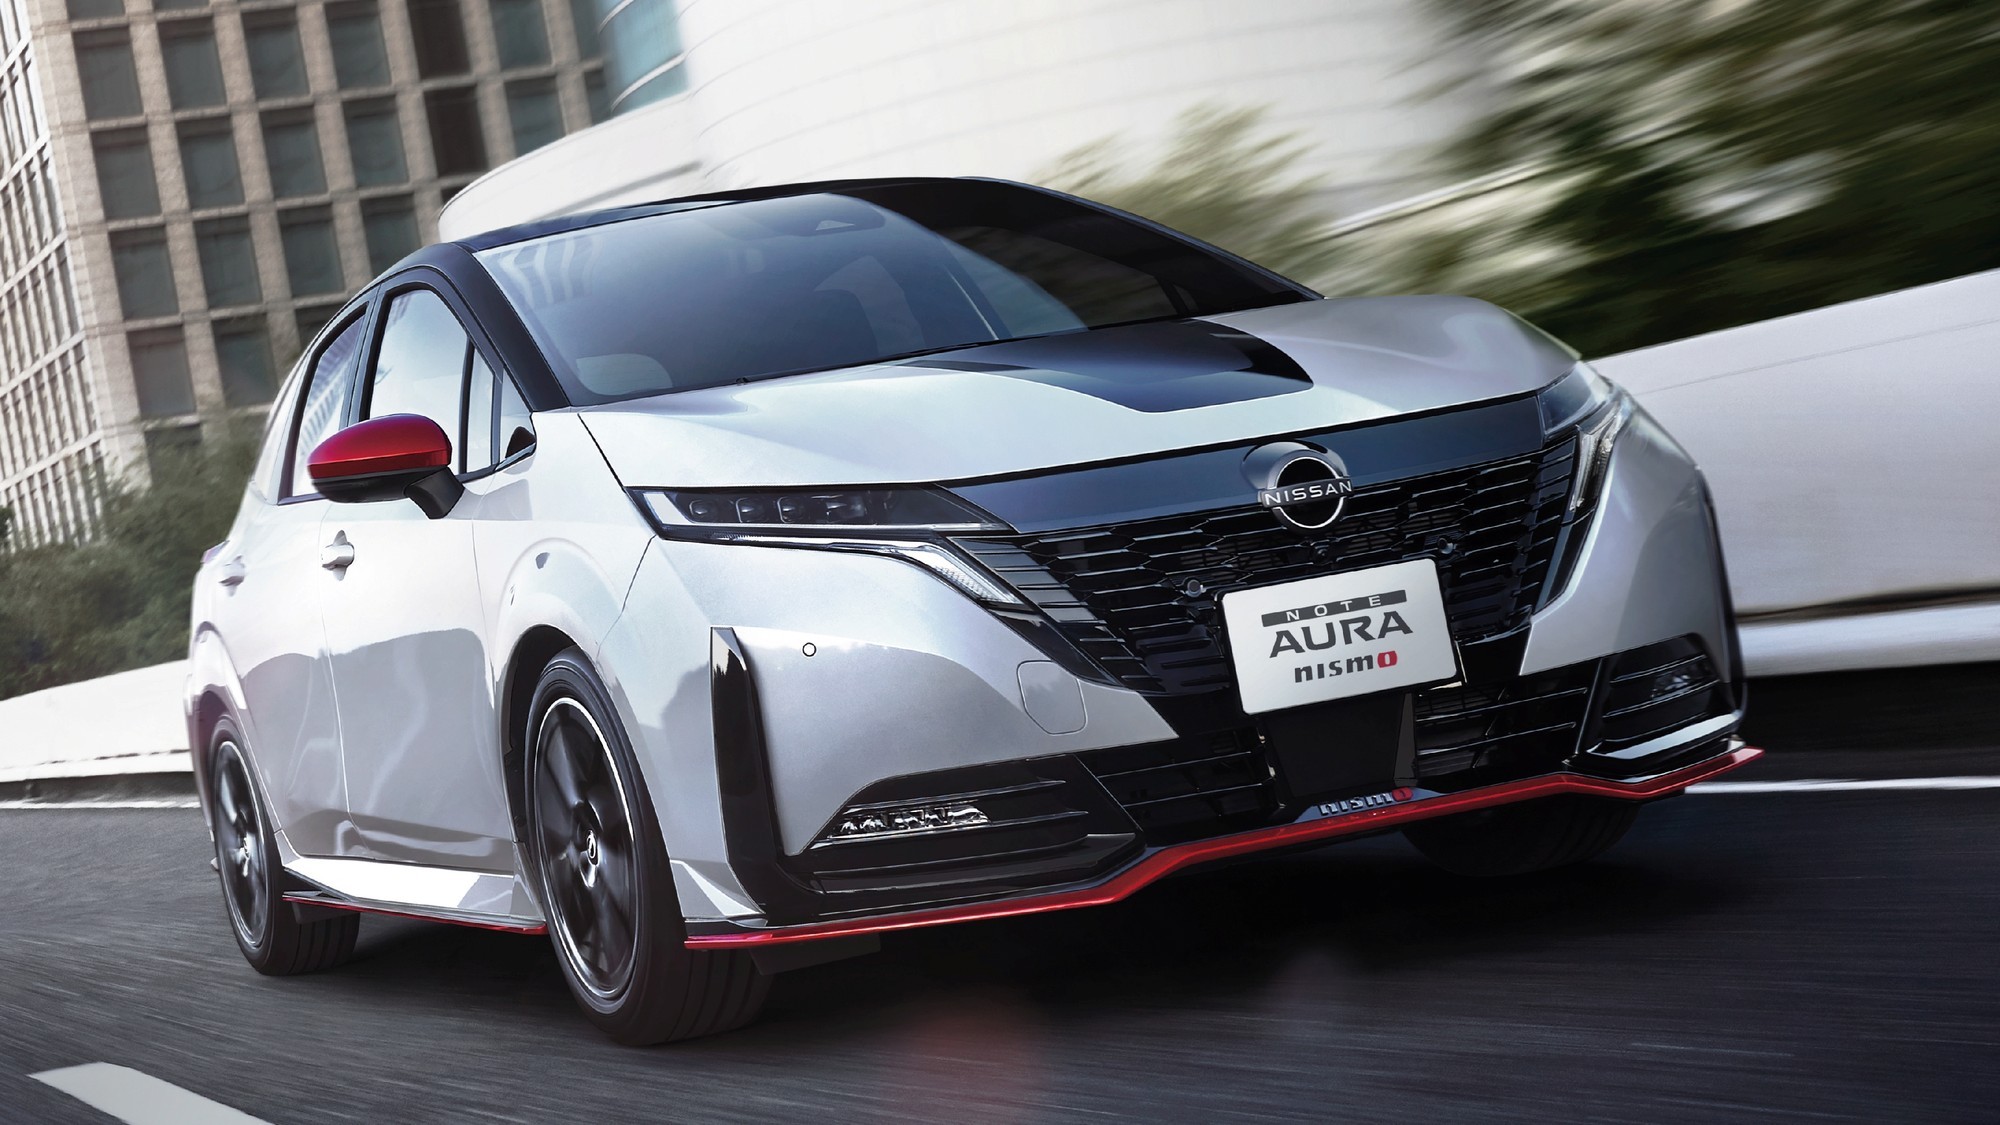 Nissan Note Aura Nismo: спорт и премиум в одном флаконе, но без прибавки мощности